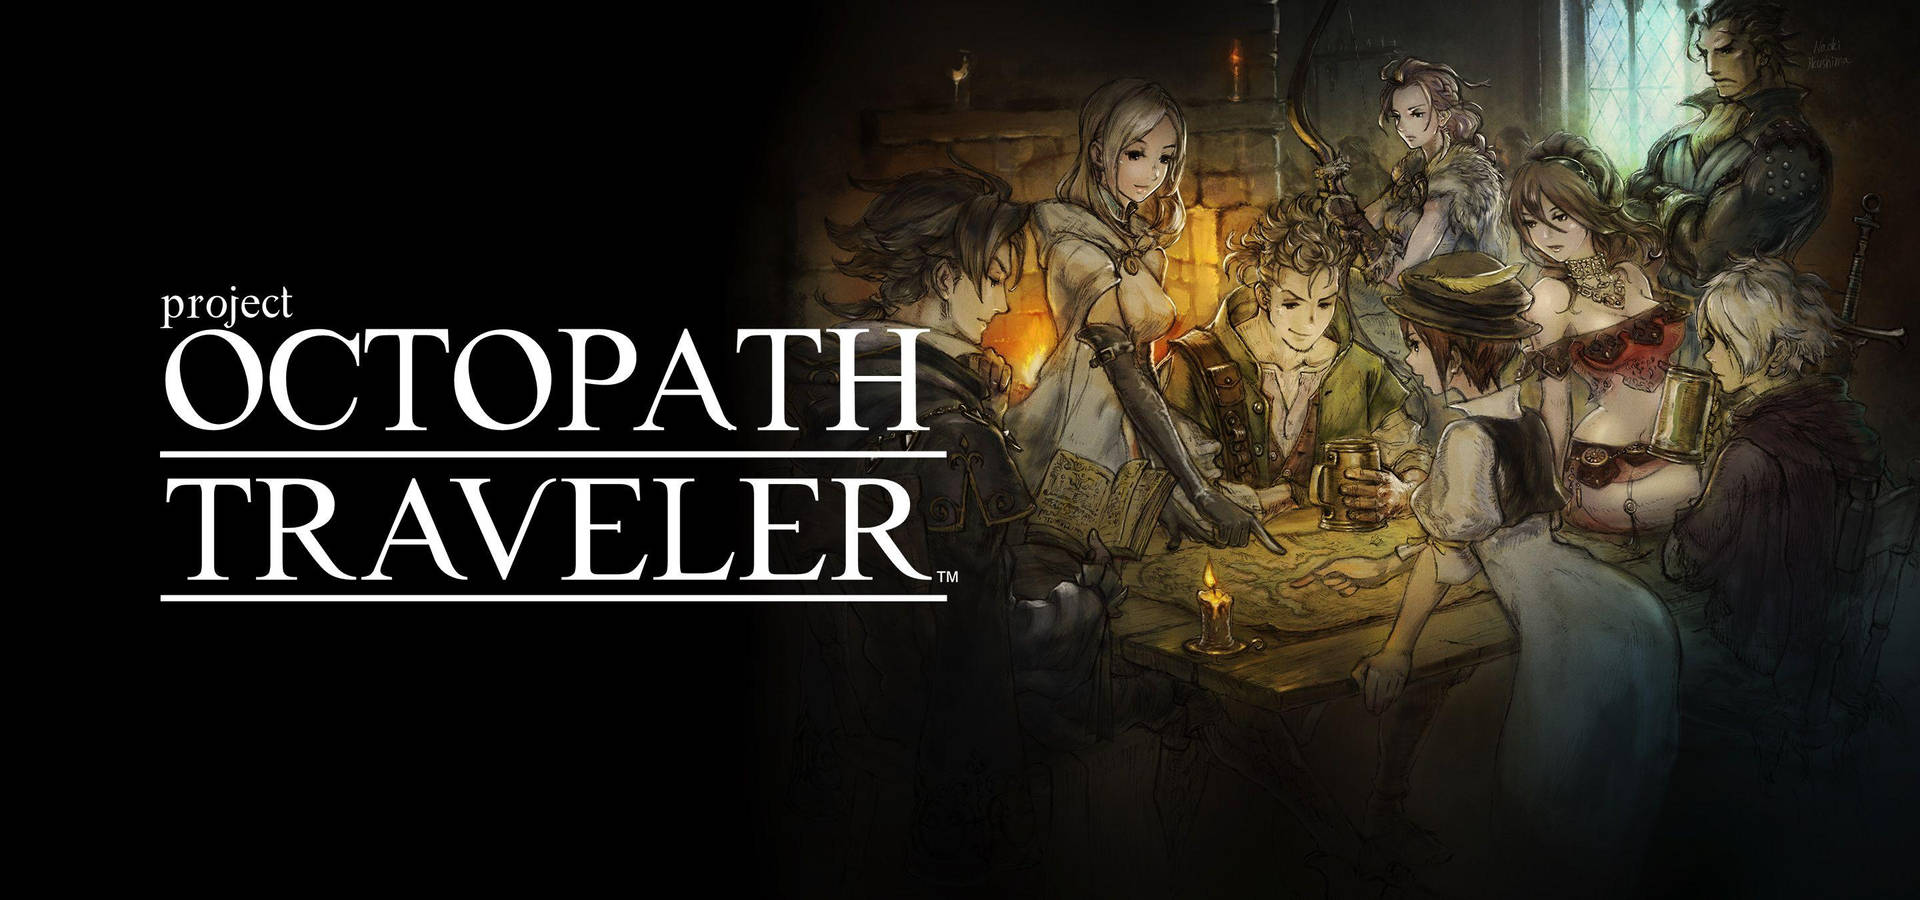 Octopath Traveler Dark Poster Background